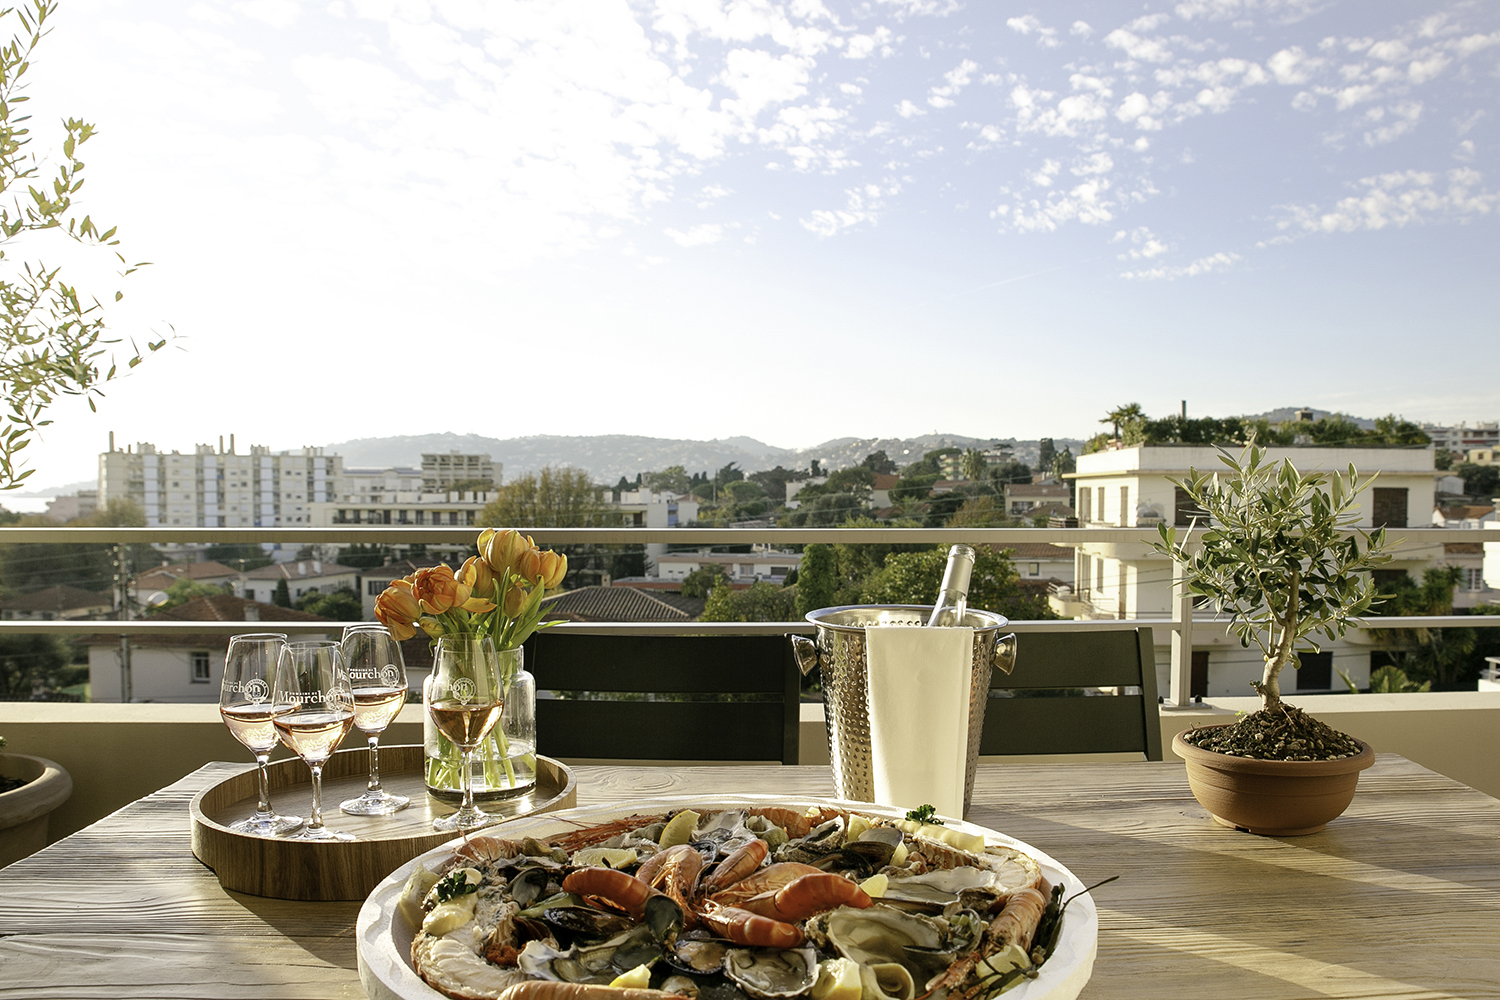 Terrasse med snacks og vin mot blå himmel